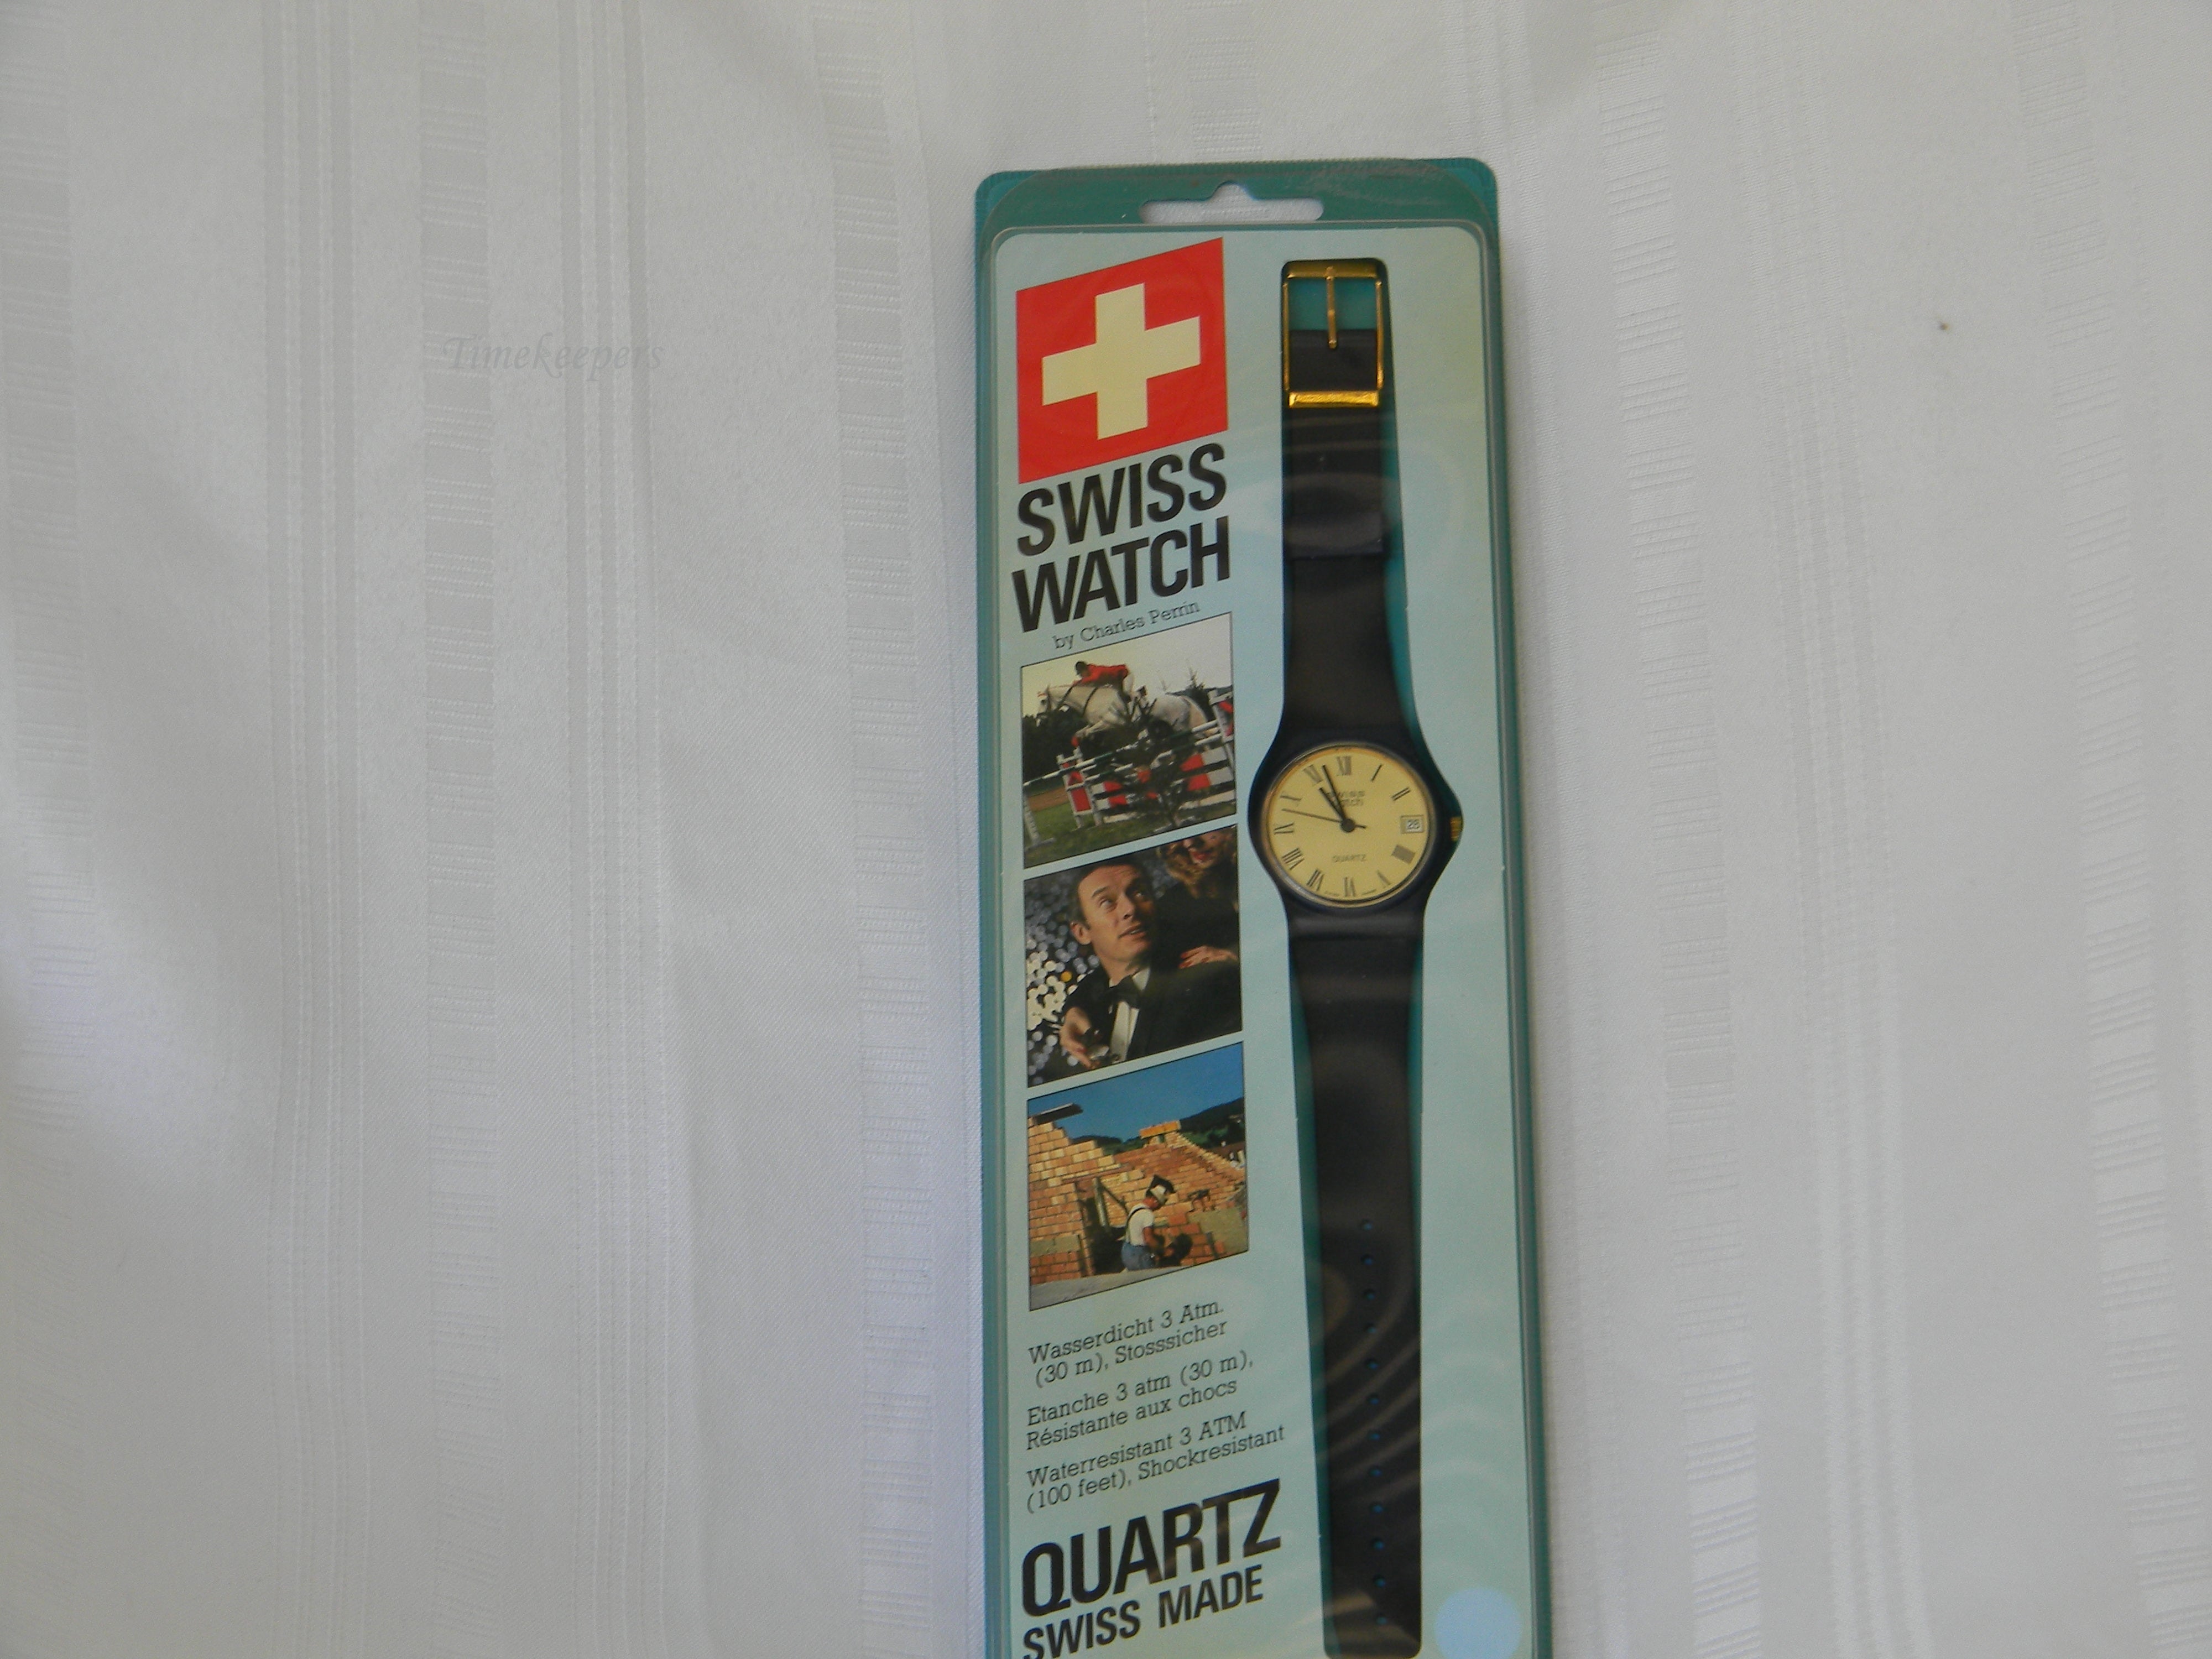 h395 Original Sealed Packaging Men's Swiss Watch by Charles Perrin in Navy